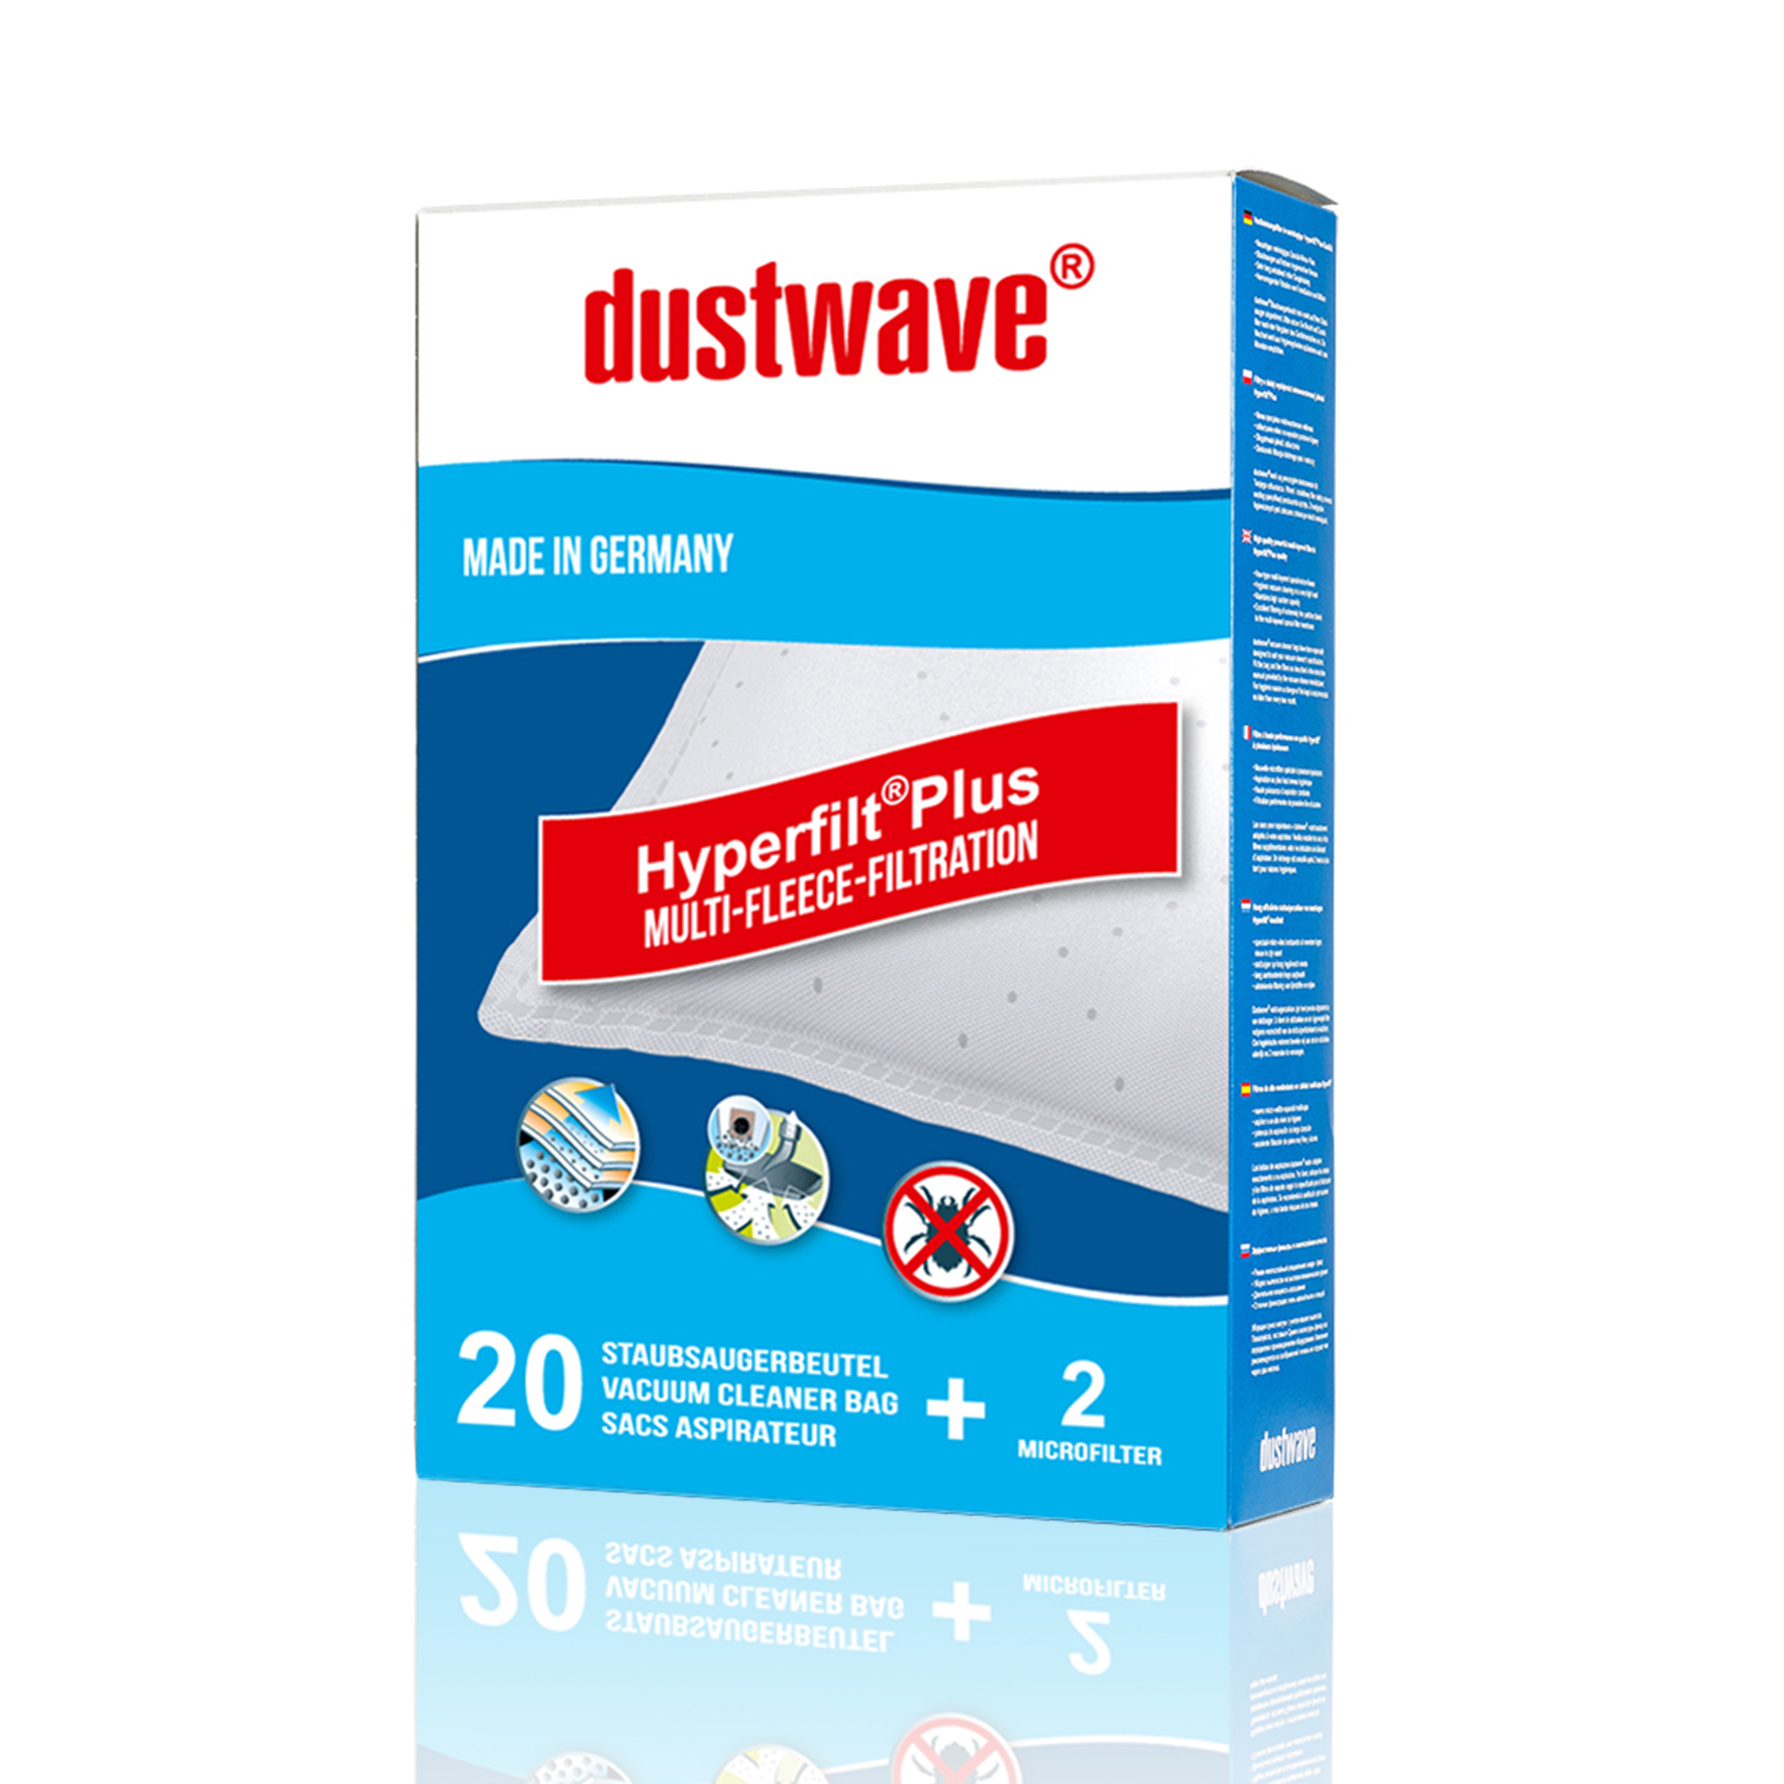 Dustwave® 40 Staubsaugerbeutel für SWIRL S 73 - hocheffizient, mehrlagiges Mikrovlies mit Hygieneverschluss - Made in Germany